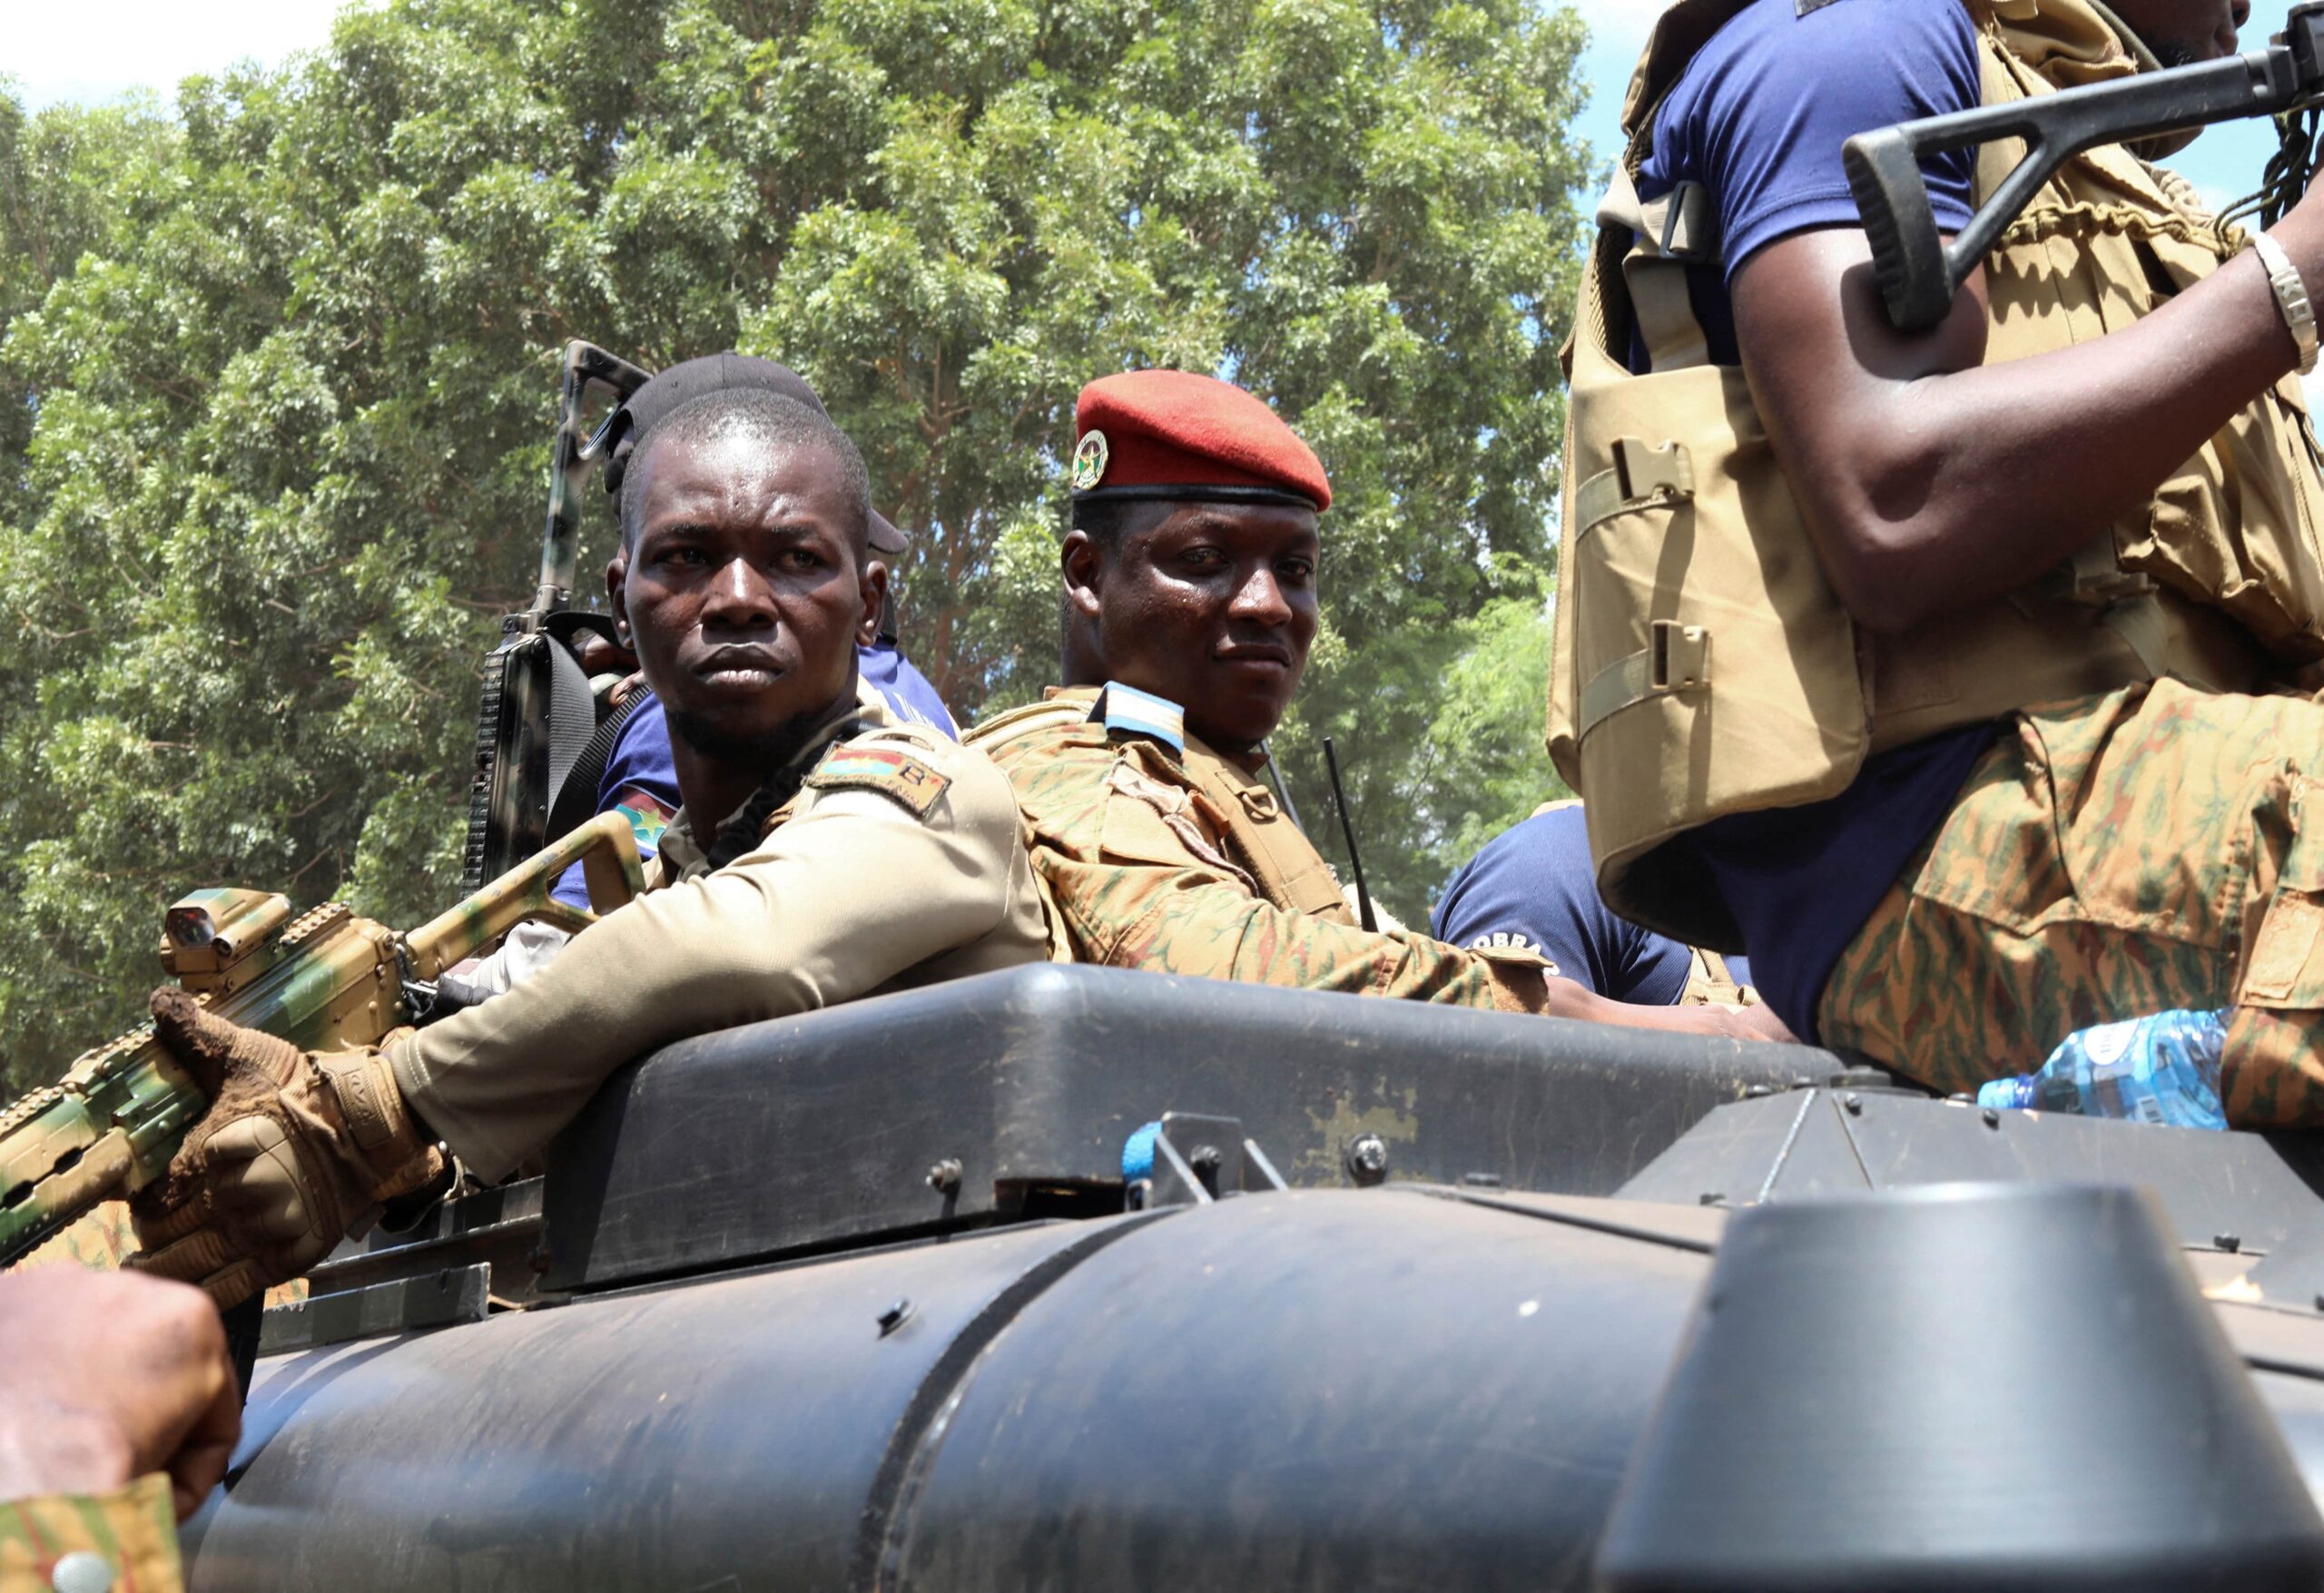 Burkina Faso: Le coup d’Etat militaire menace la stabilité et les droits humains - Civic Space